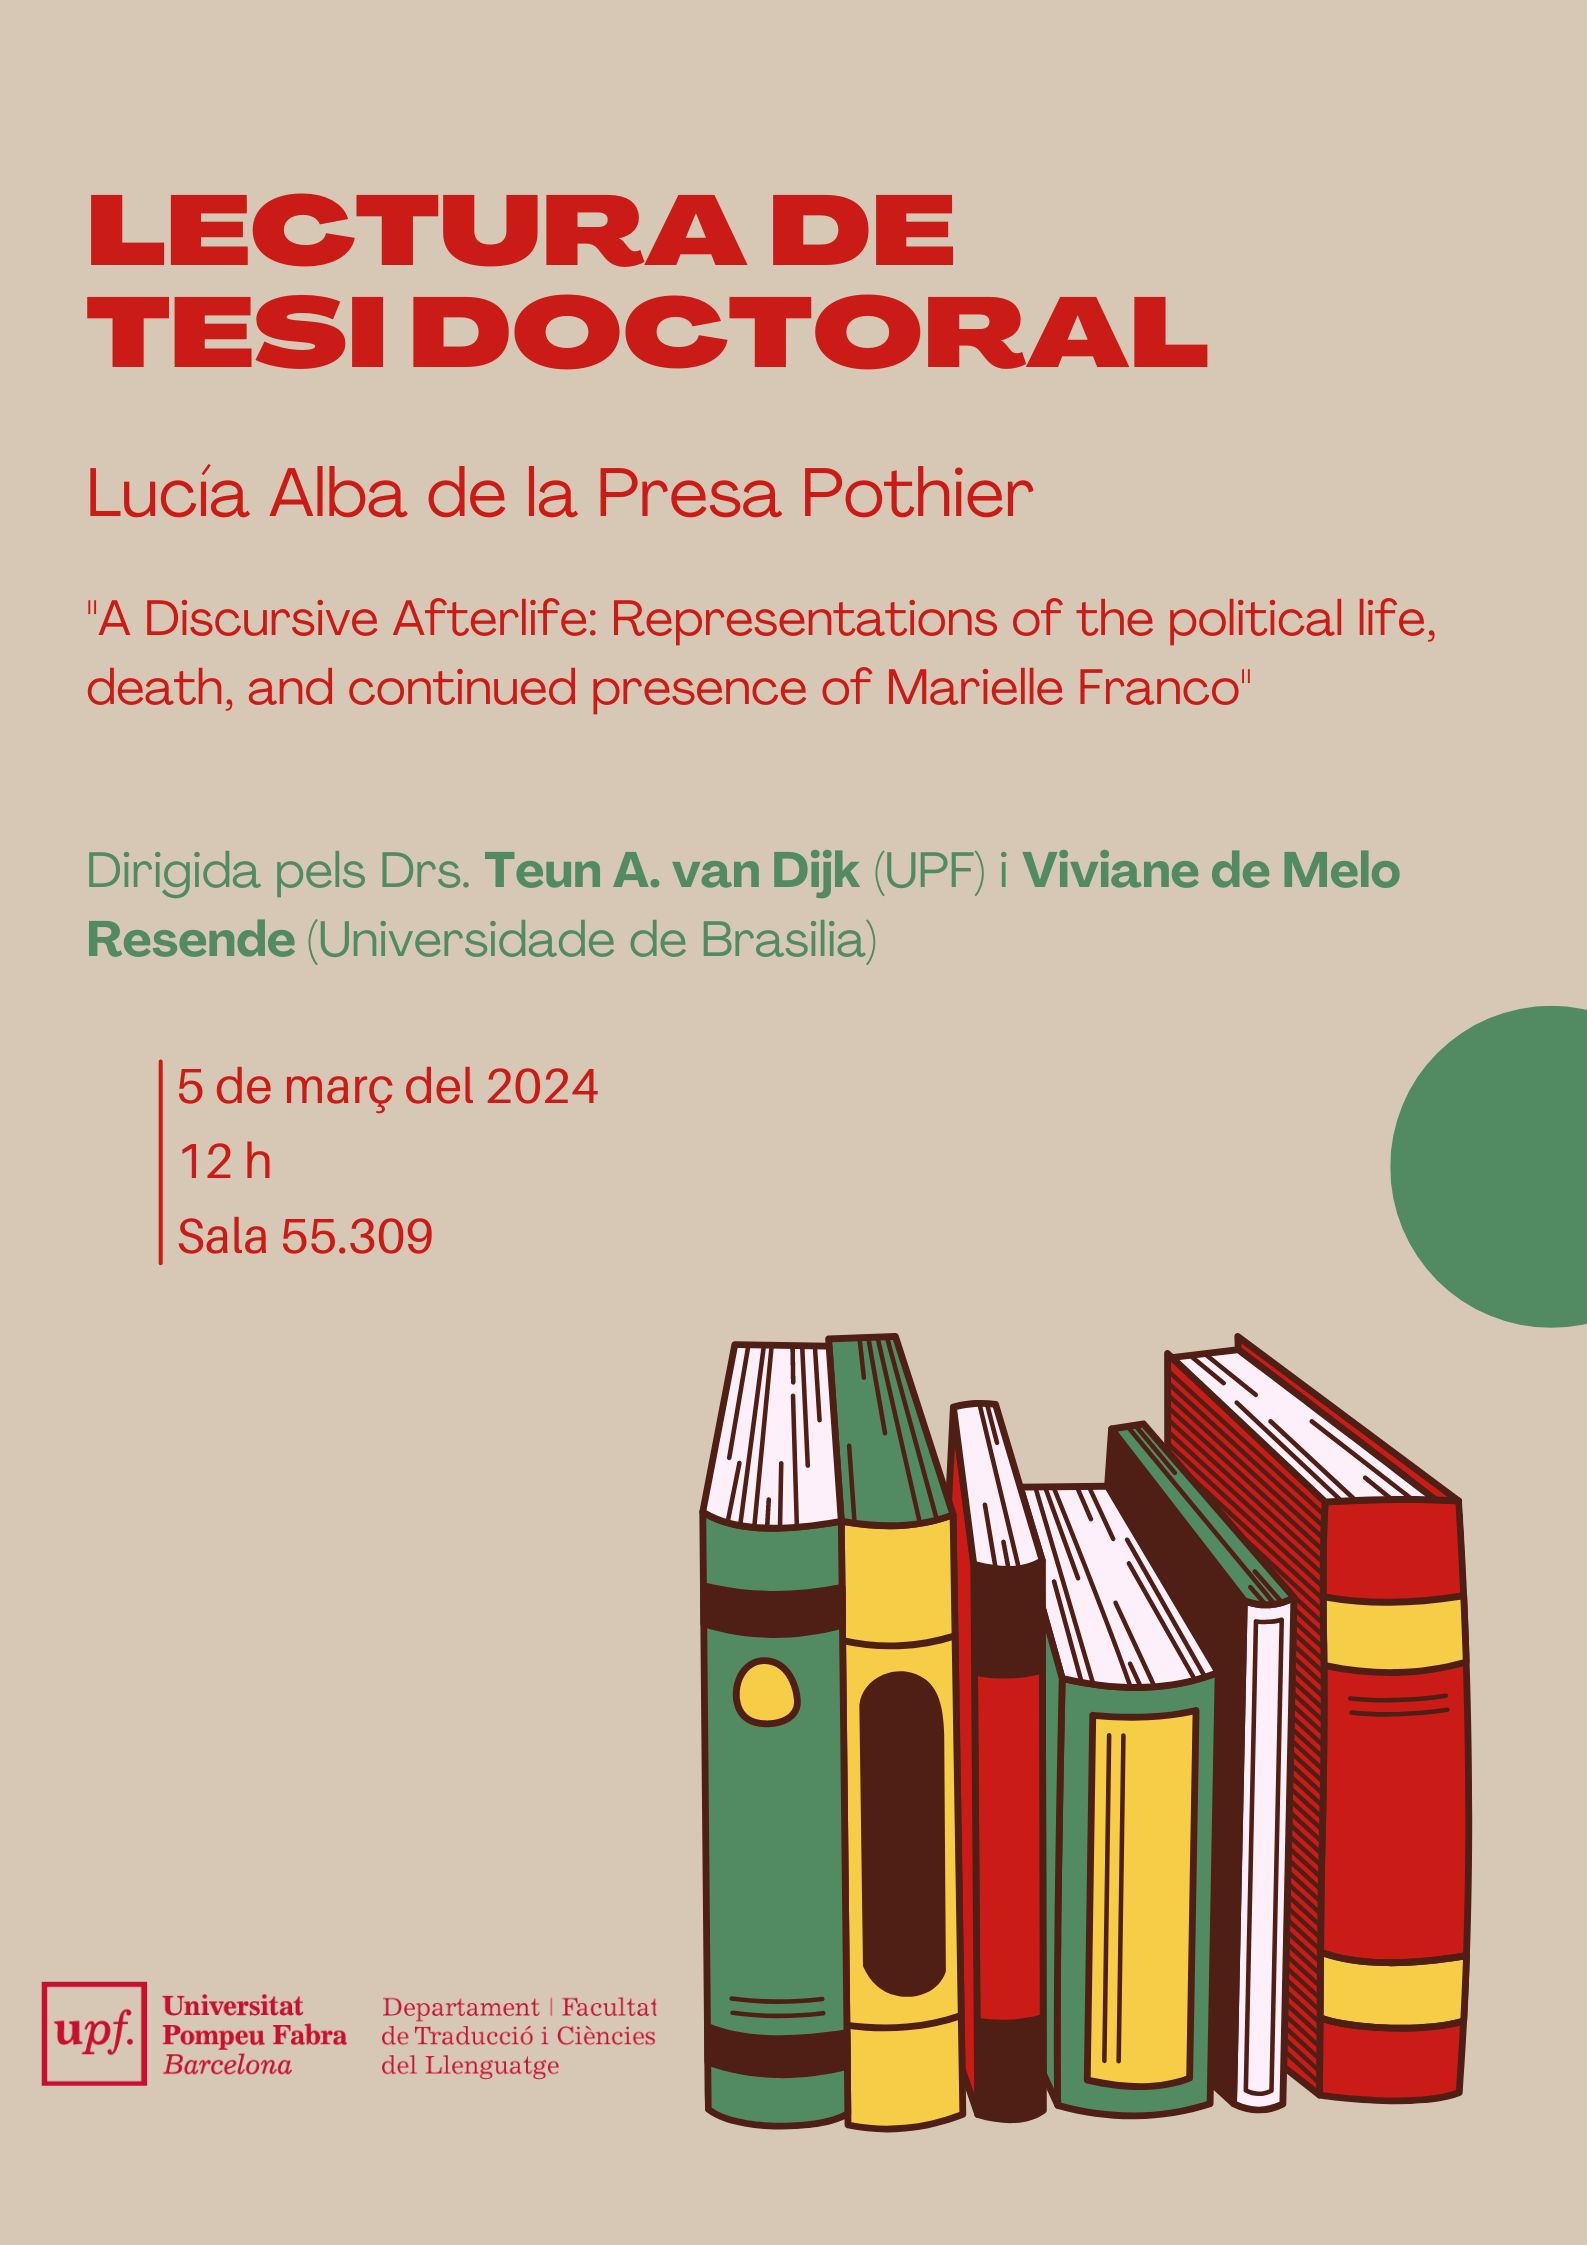 05/03/2024 Lectura de la tesi doctoral de Lucía Alba de la Presa Pothier, a les 12.00 hores